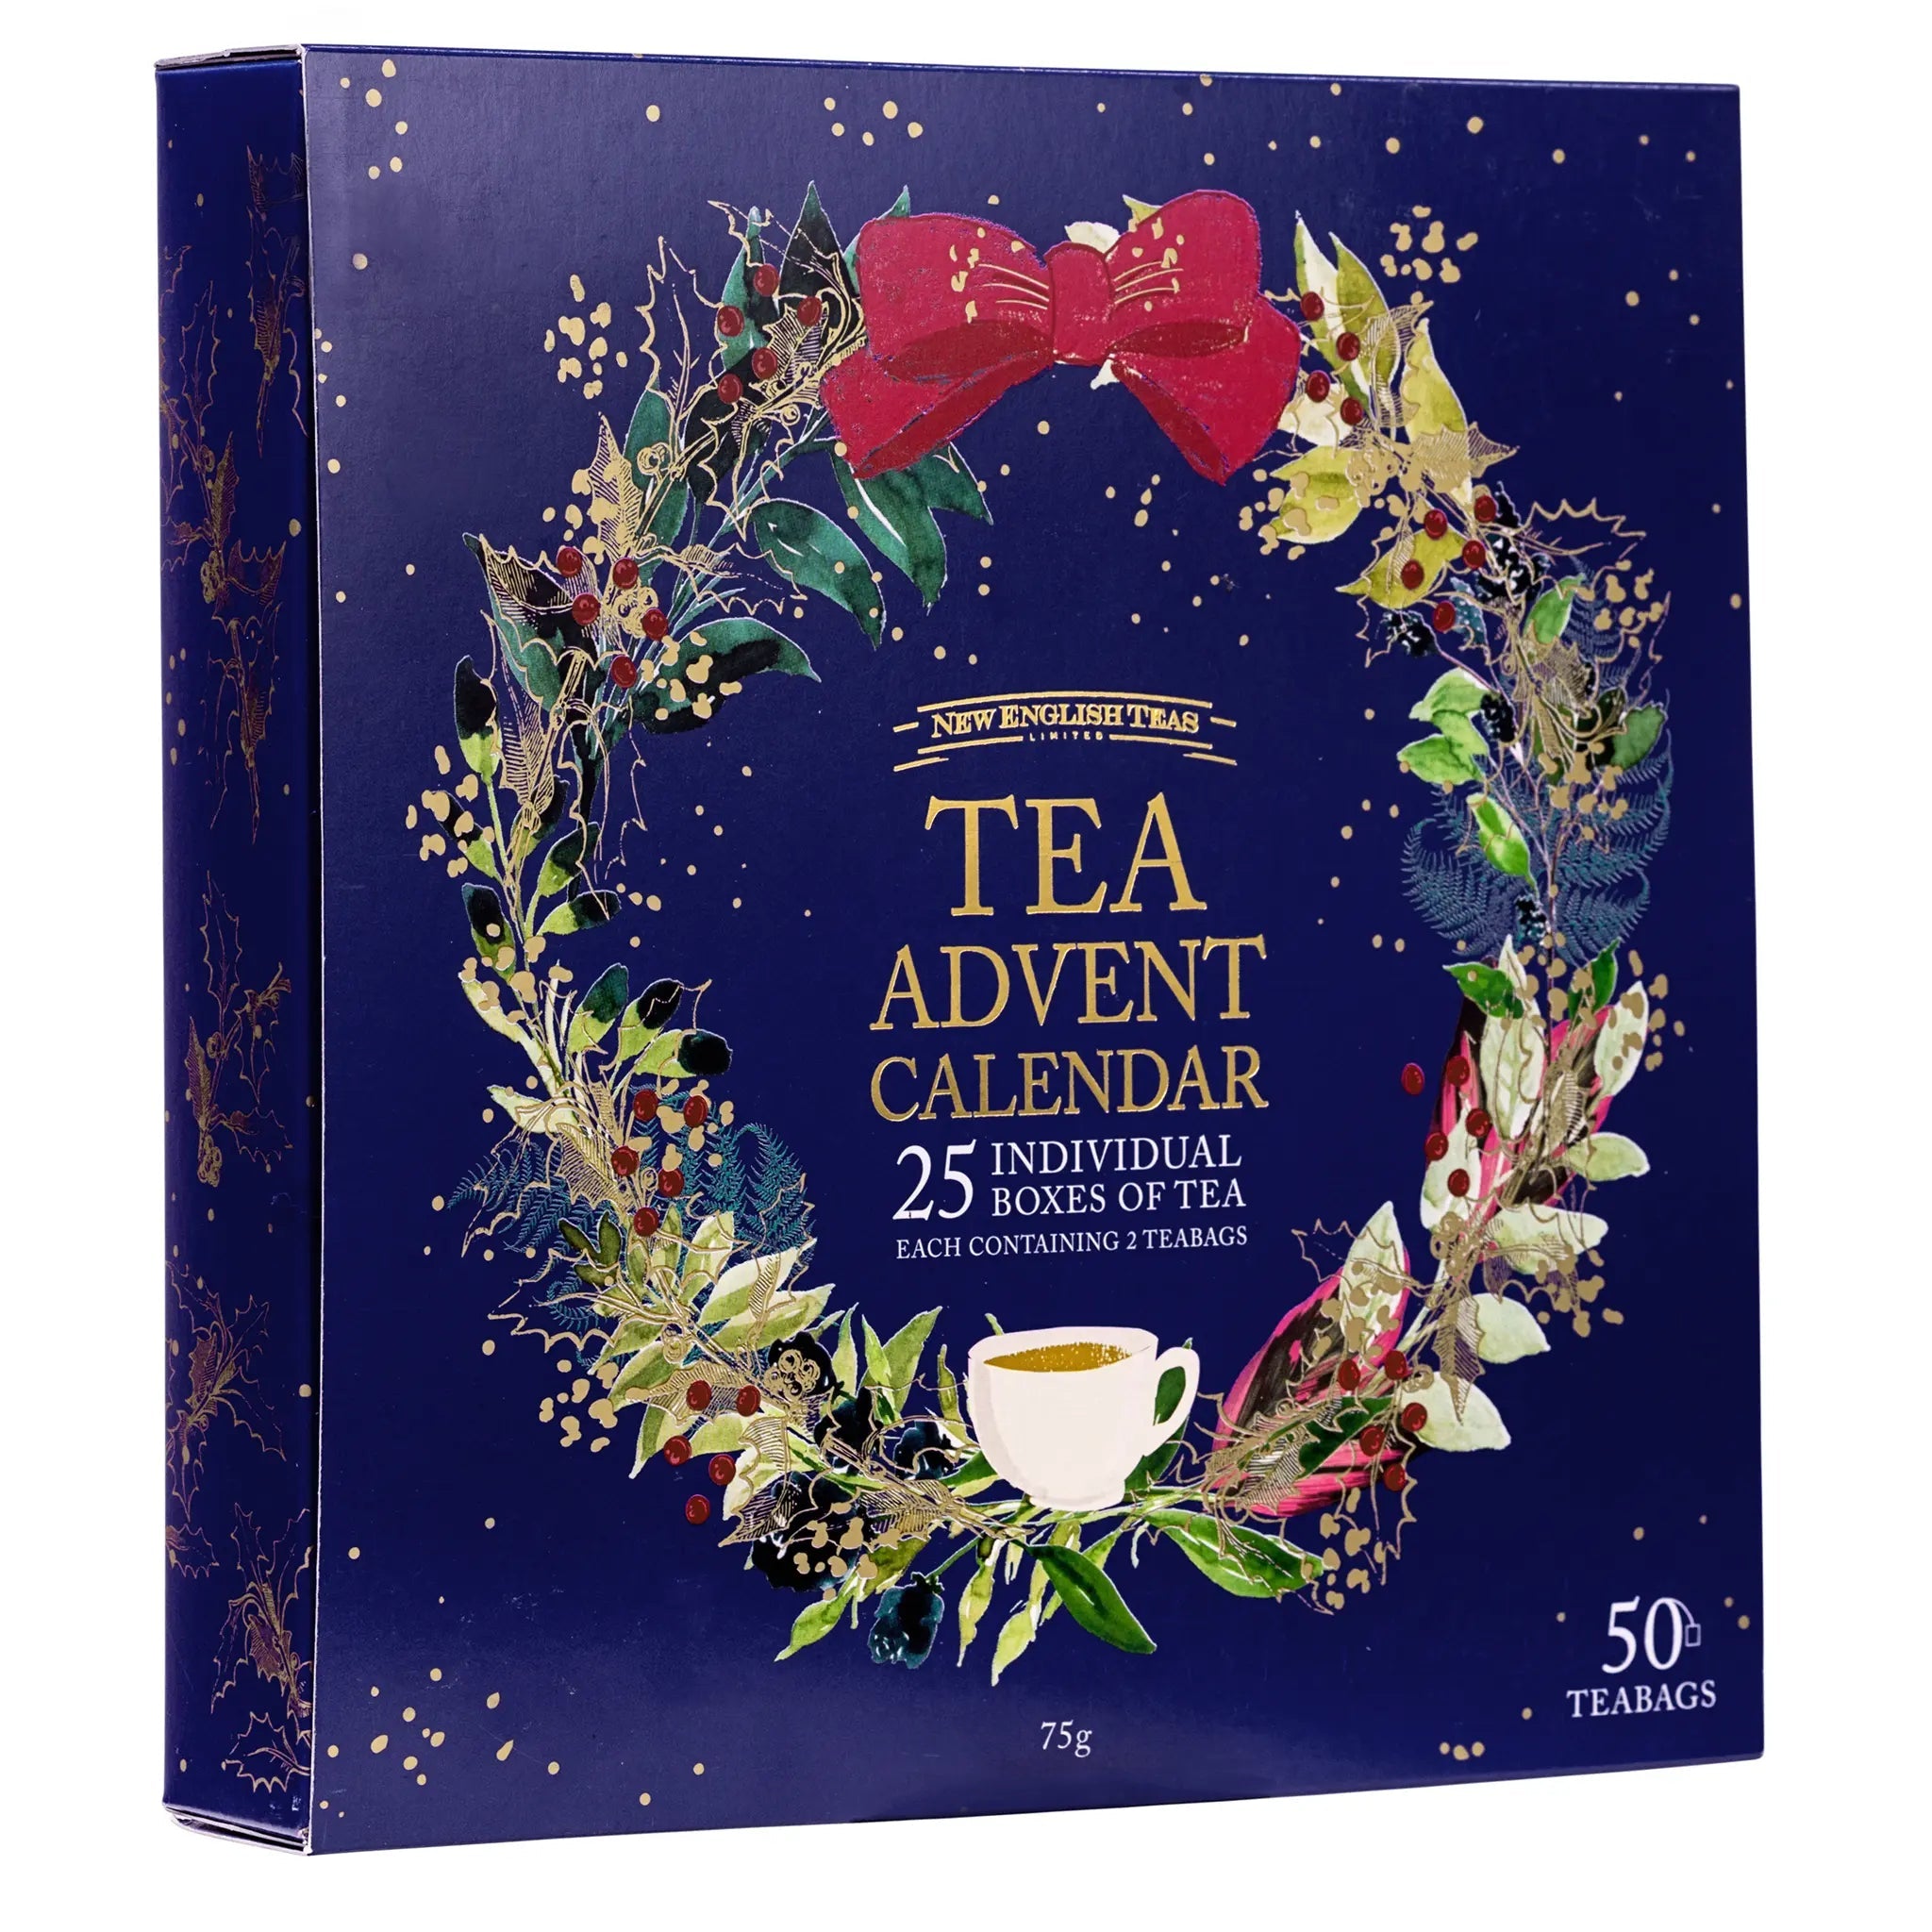 The Tea Advent Calendar